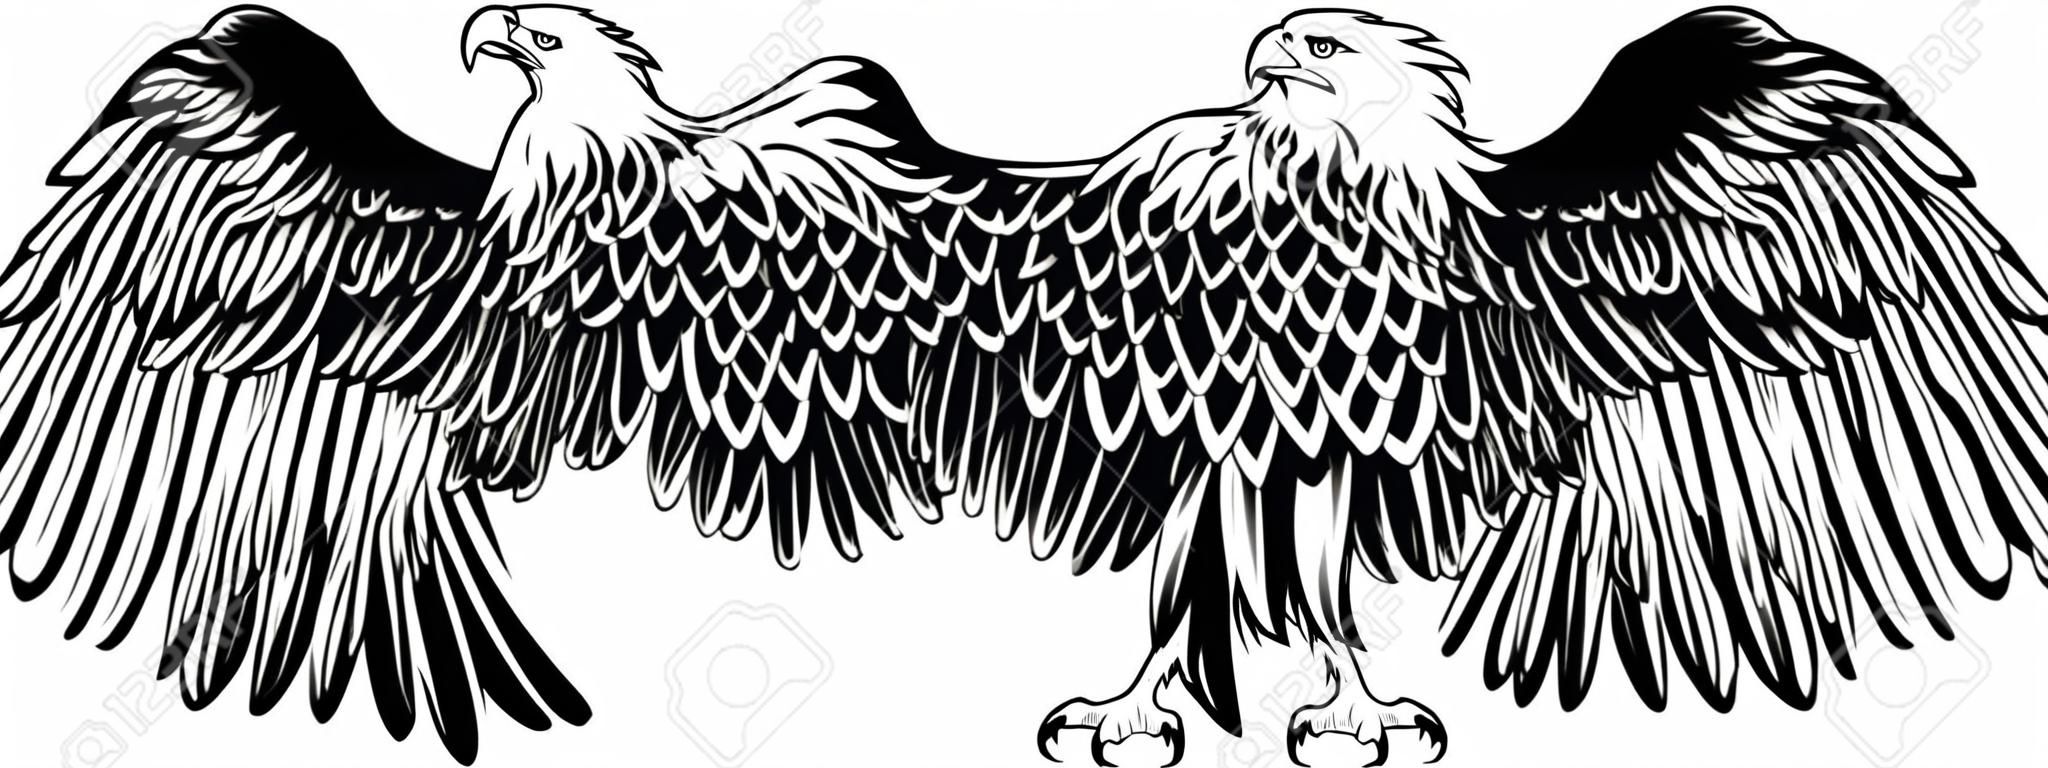 Imagen vectorial de un águila con las alas rectas